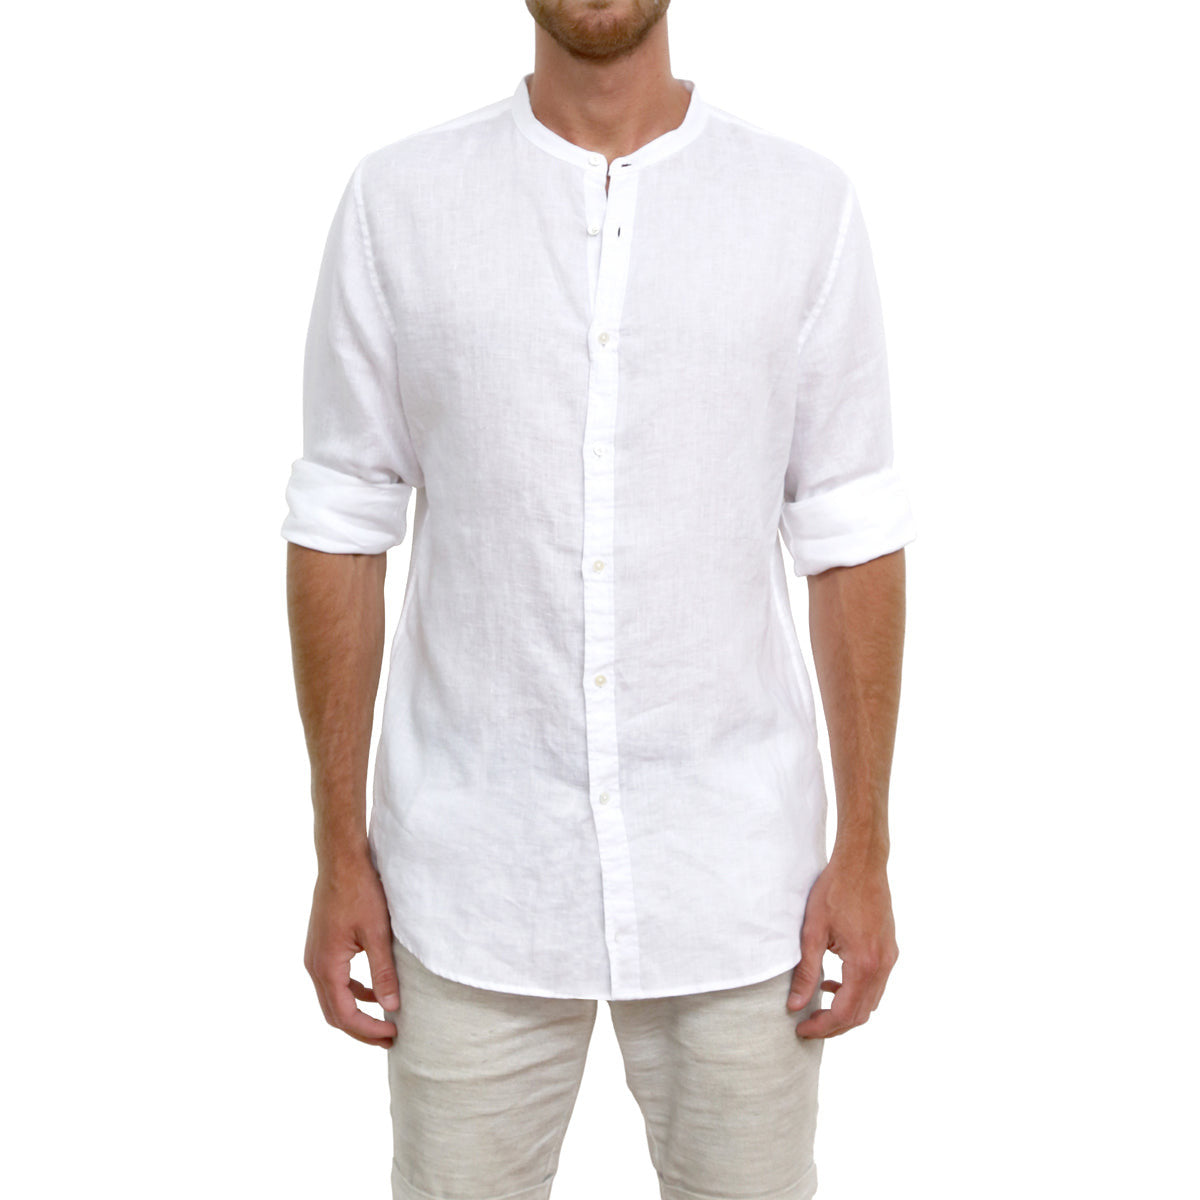 The Linen Wallis L/S Shirt